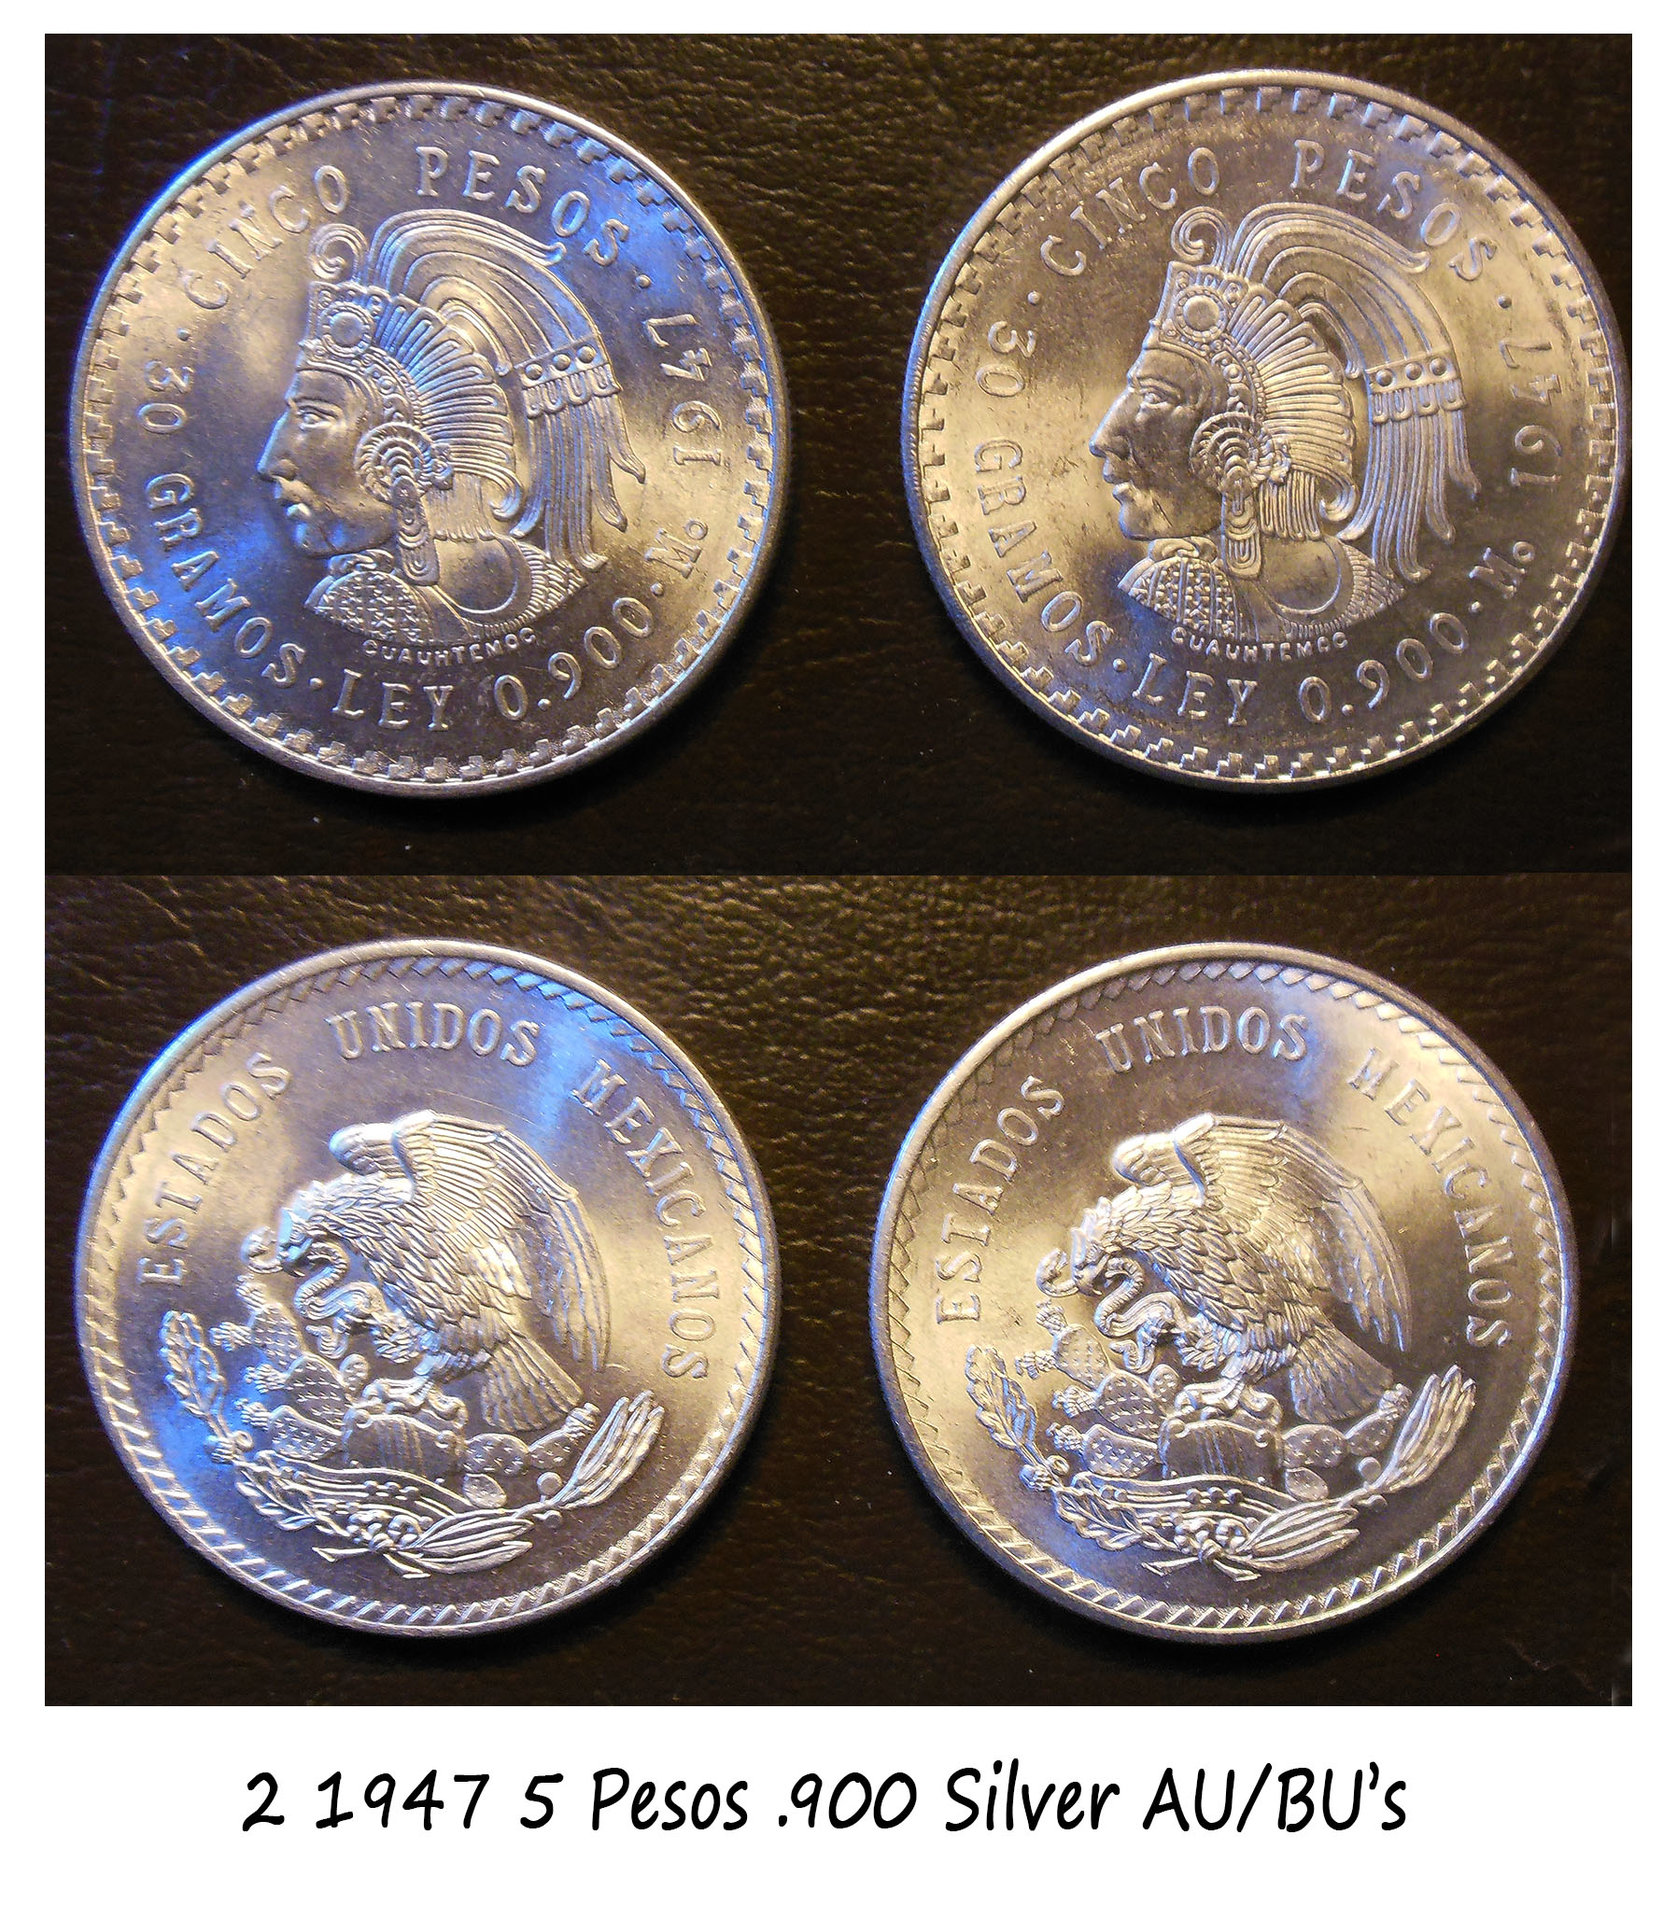 2 1947 5 pesos.jpg